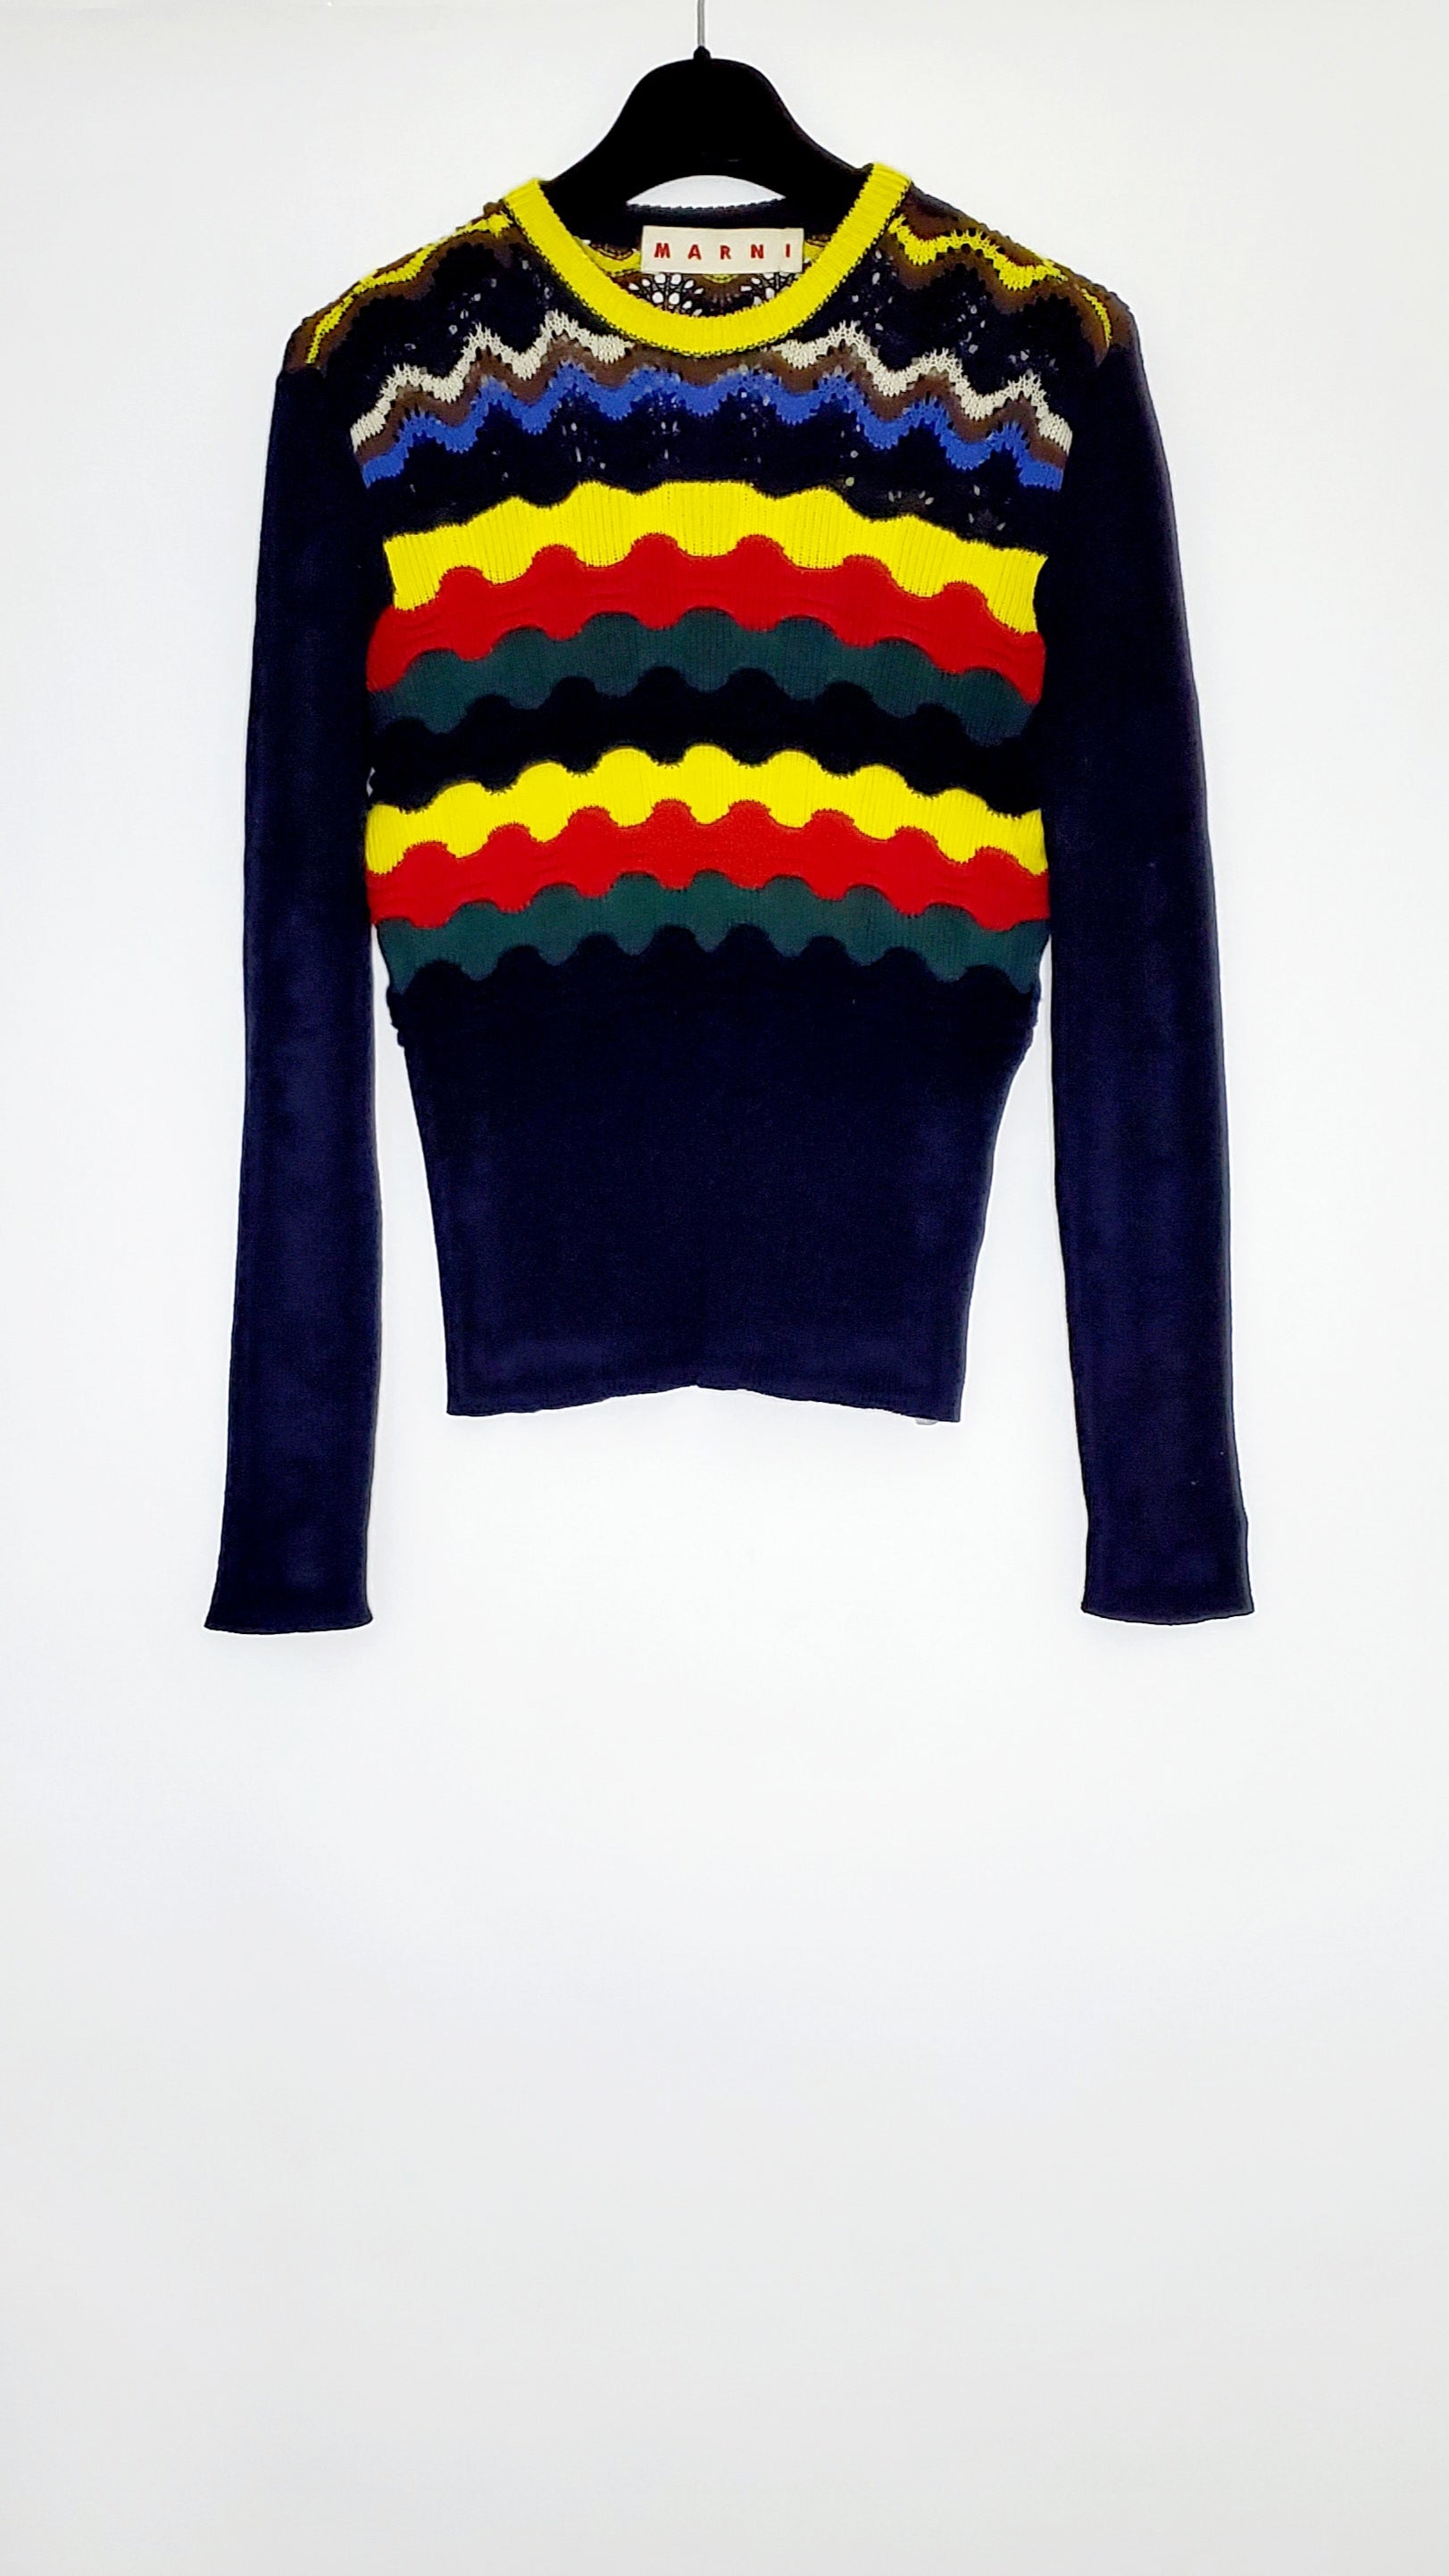 Sweater Marni 11-10957-726